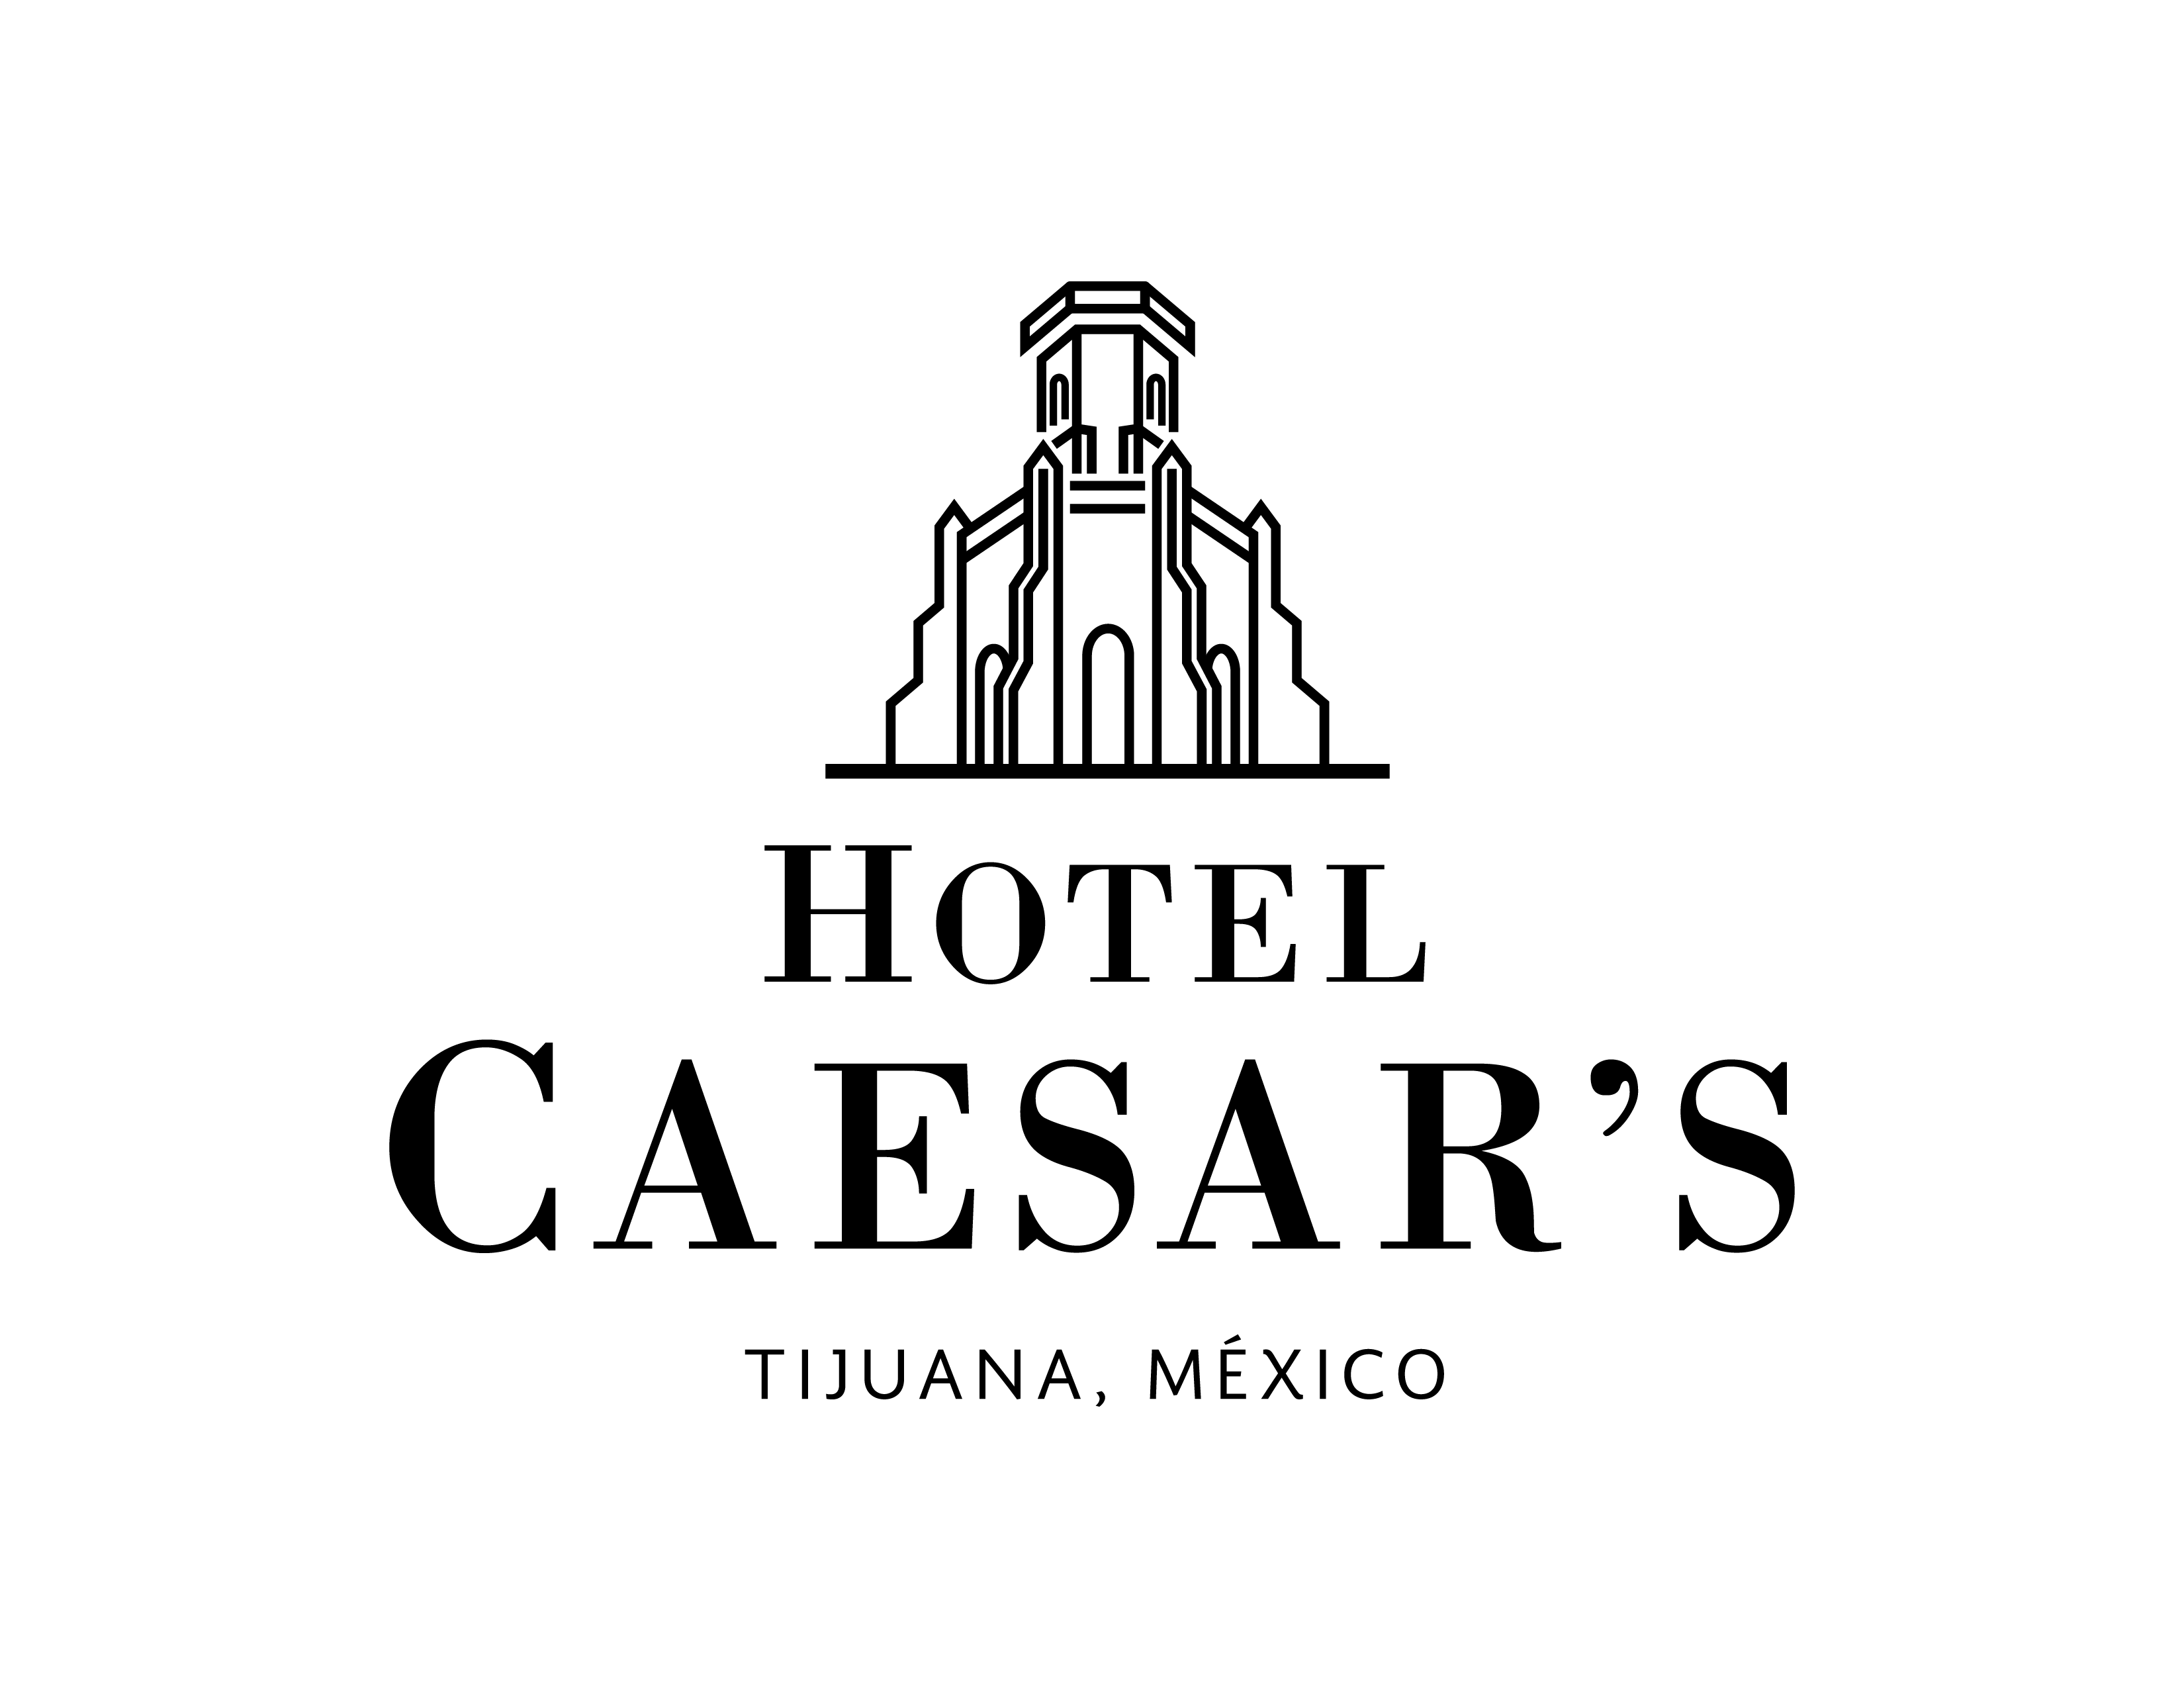 Tijuana Logo - History